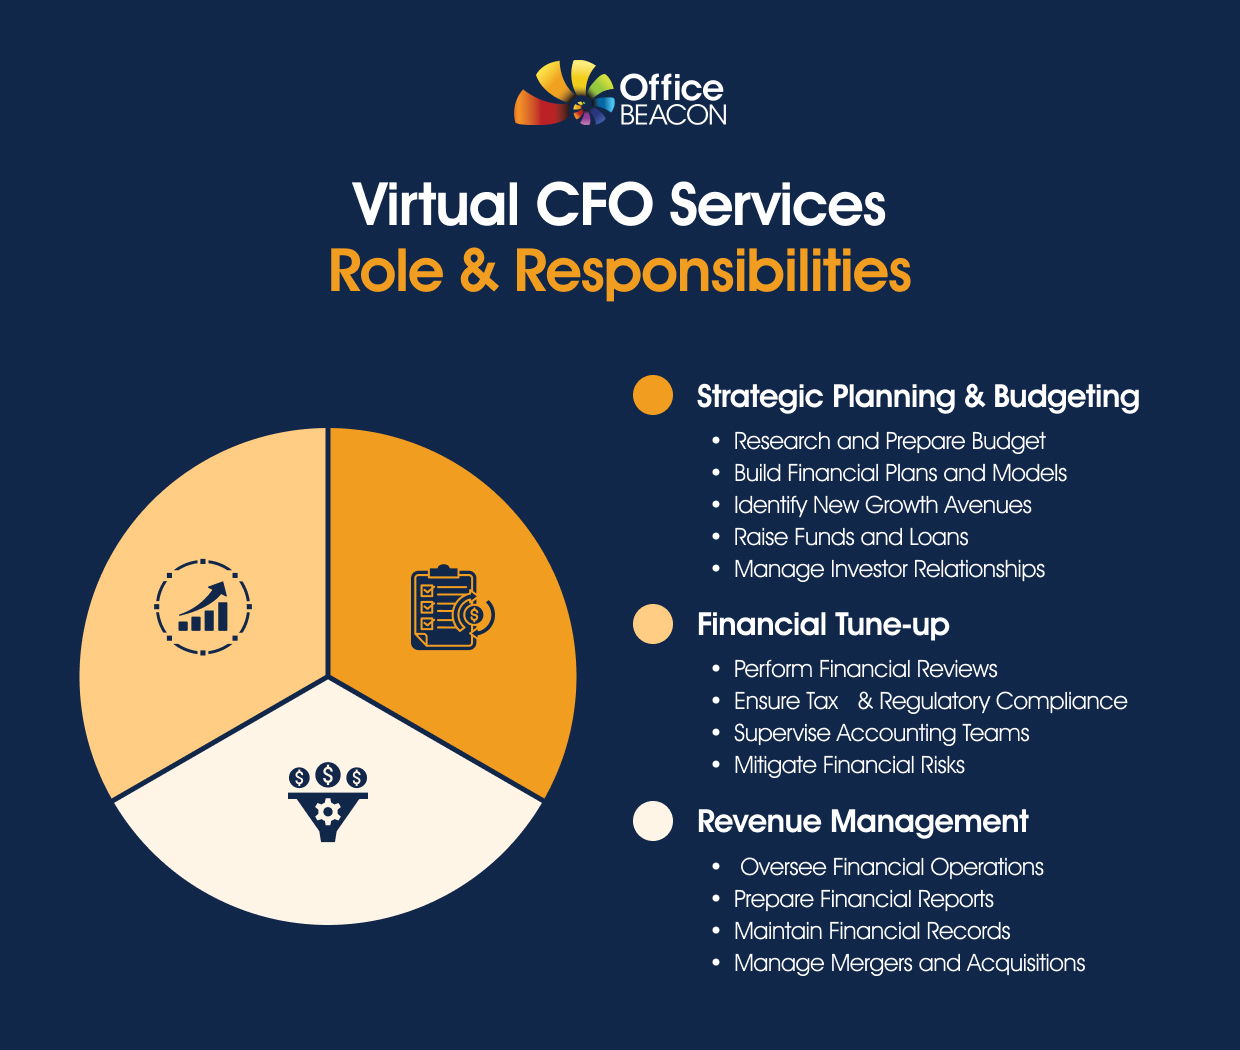 Flowz's Virtual CFO Service